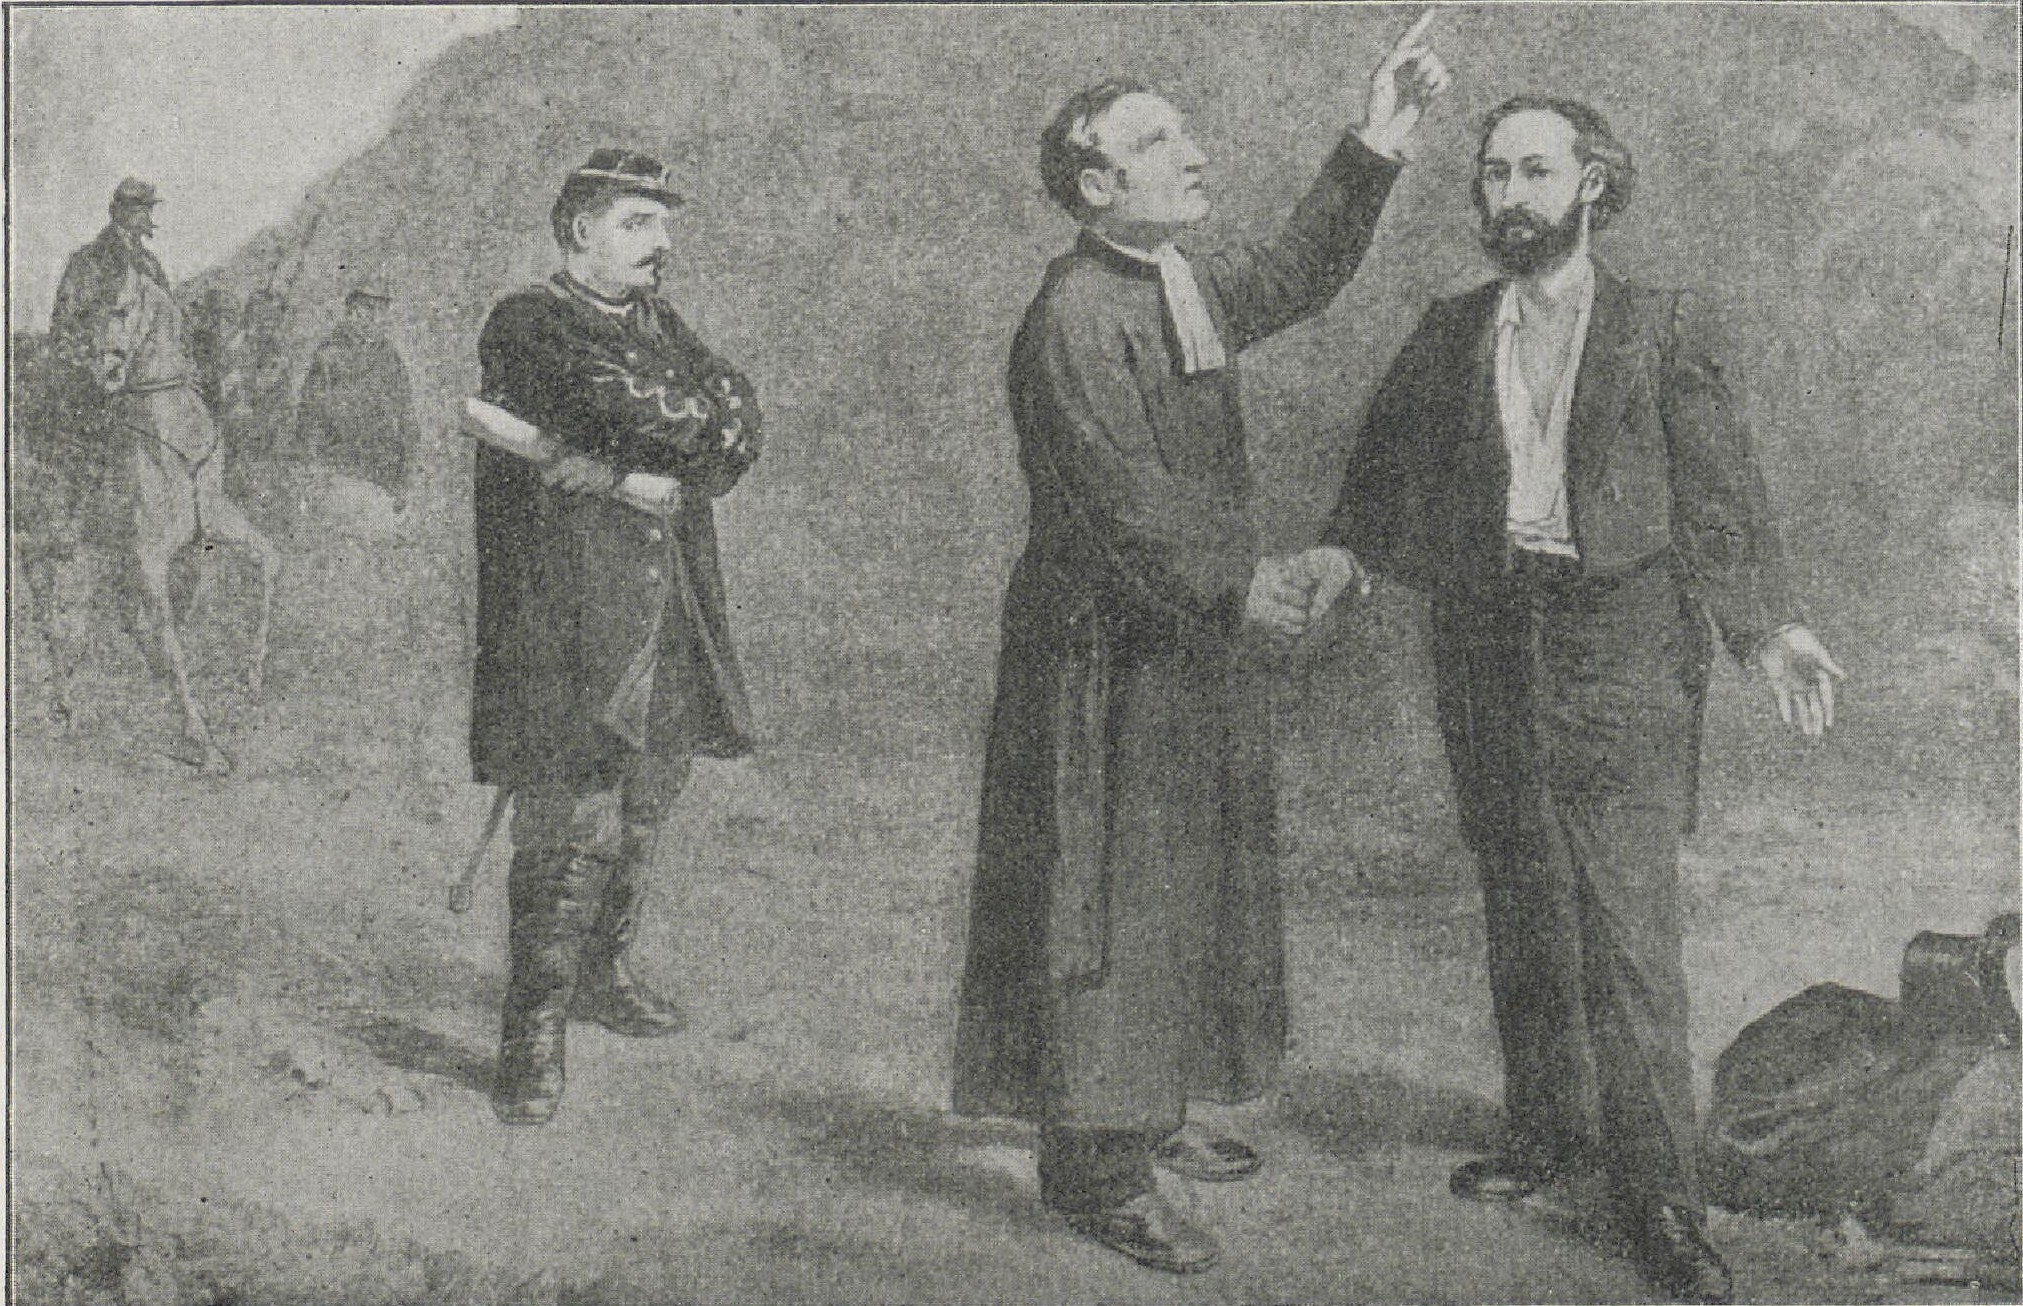 Gaston Crémieux et le rabbin Vidal le jour de l’exécution, au pharo, le 30 novembre 1871 - D'après un dessin de Combes (Musée du vieux Marseille)